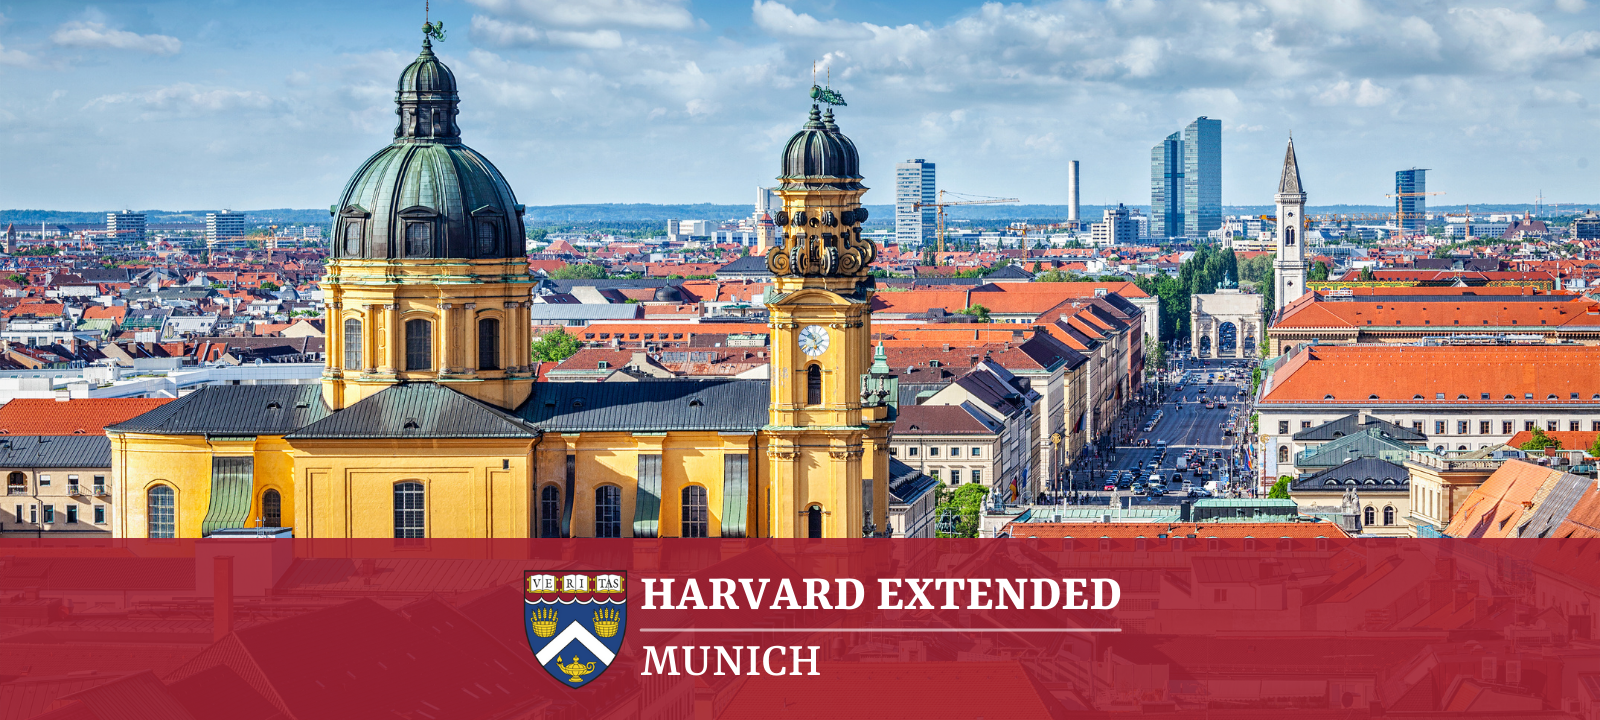 Harvard Extended Munich 11.3.22